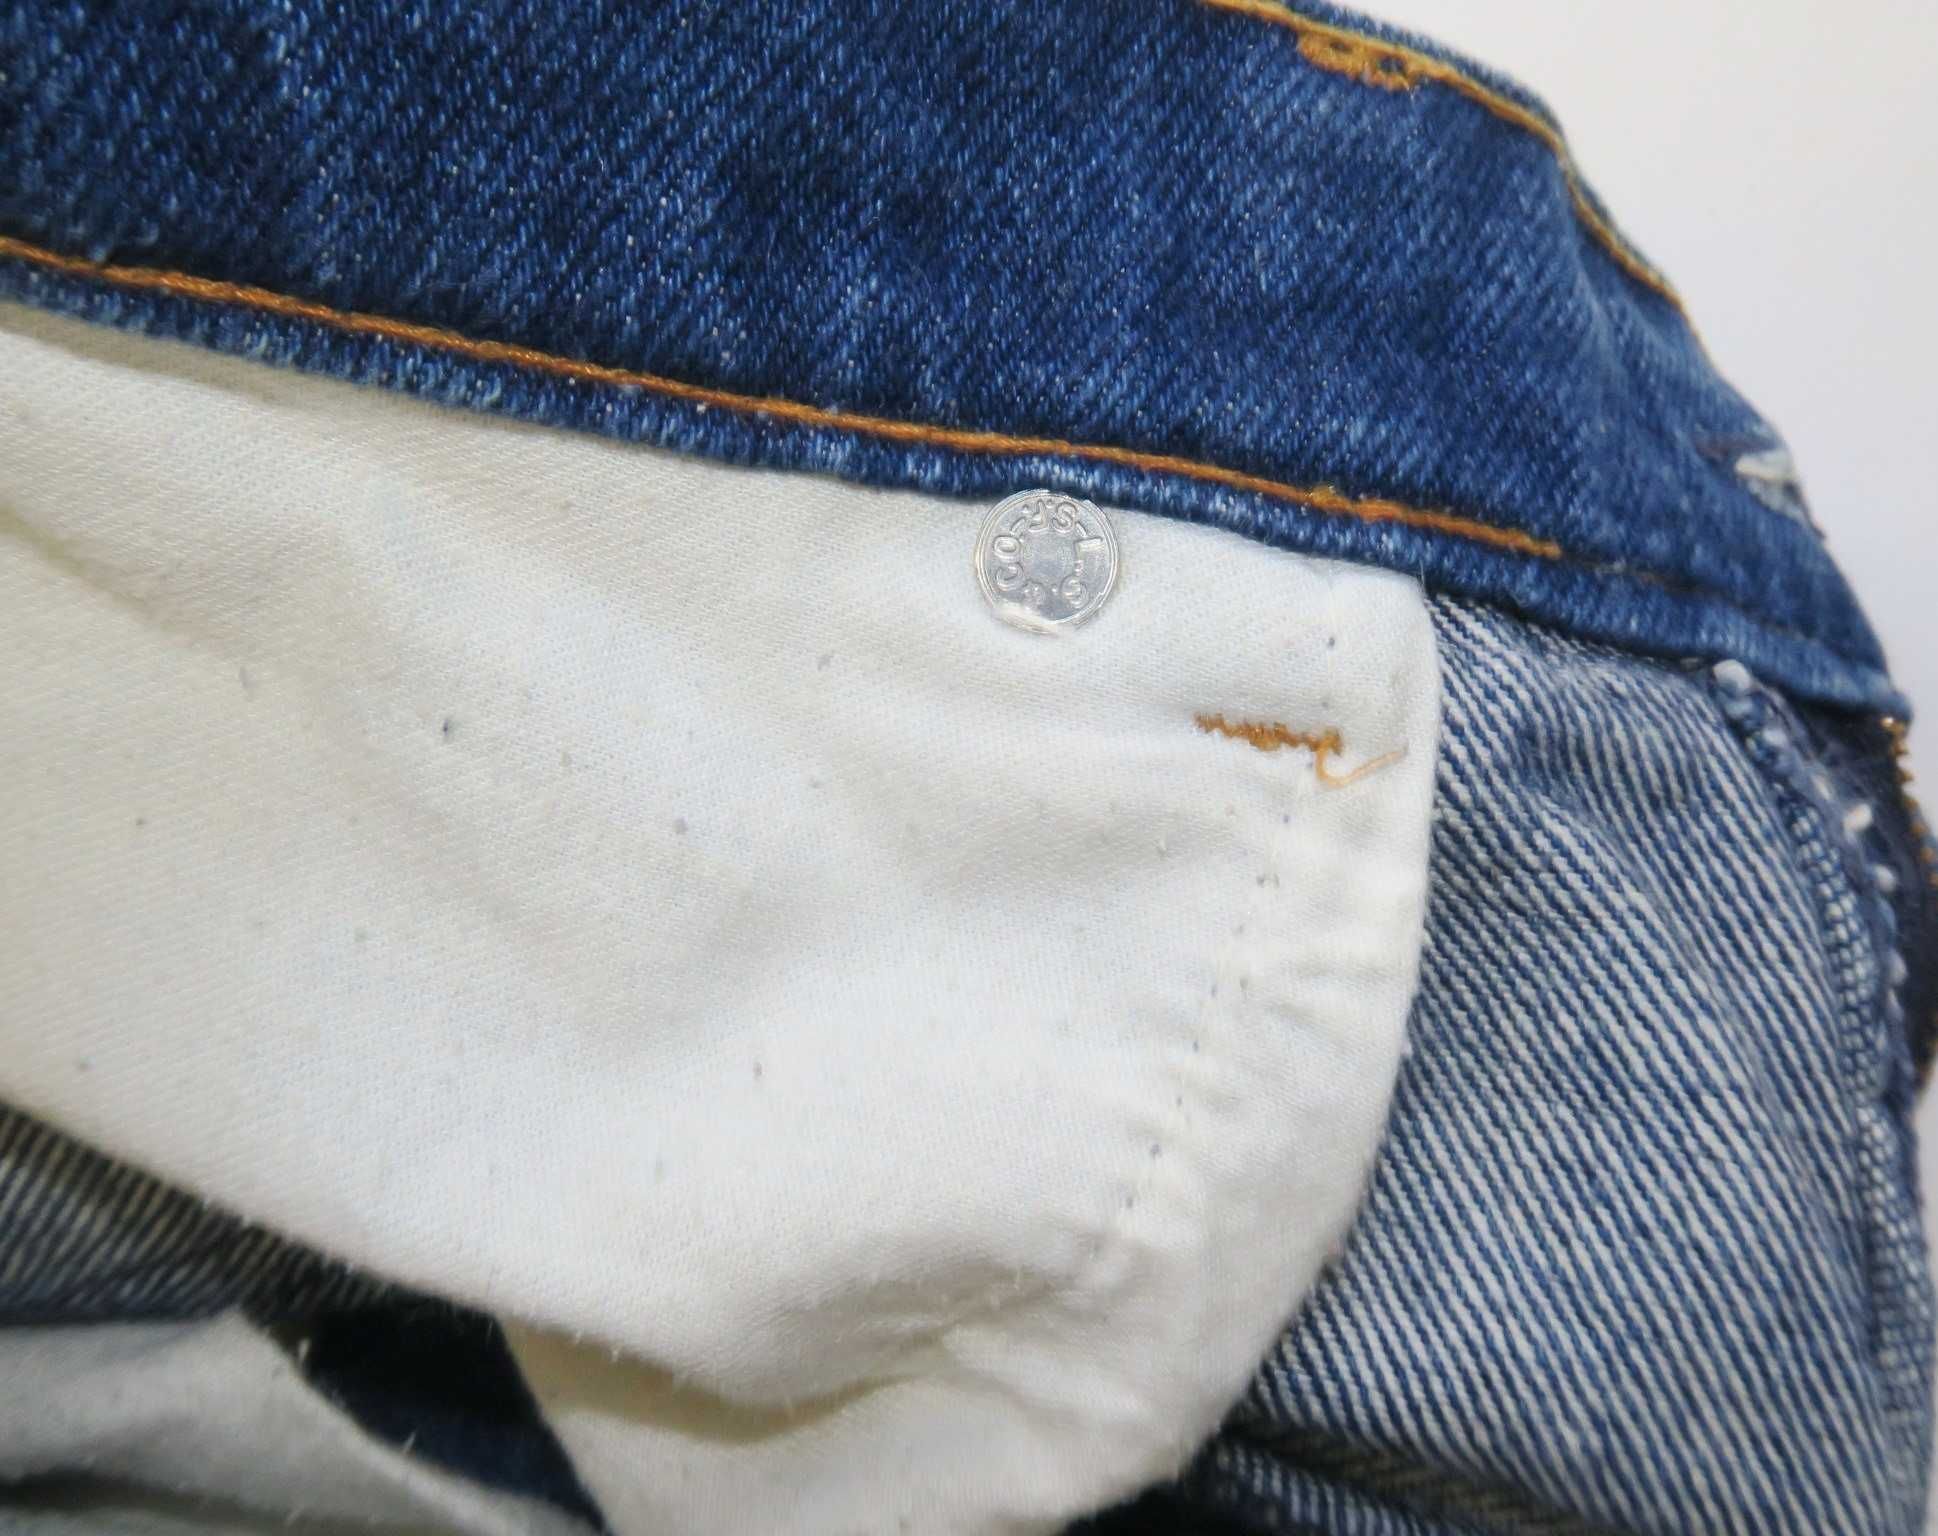 Levi's spodnie jeansowe orange tab vintage 80s M